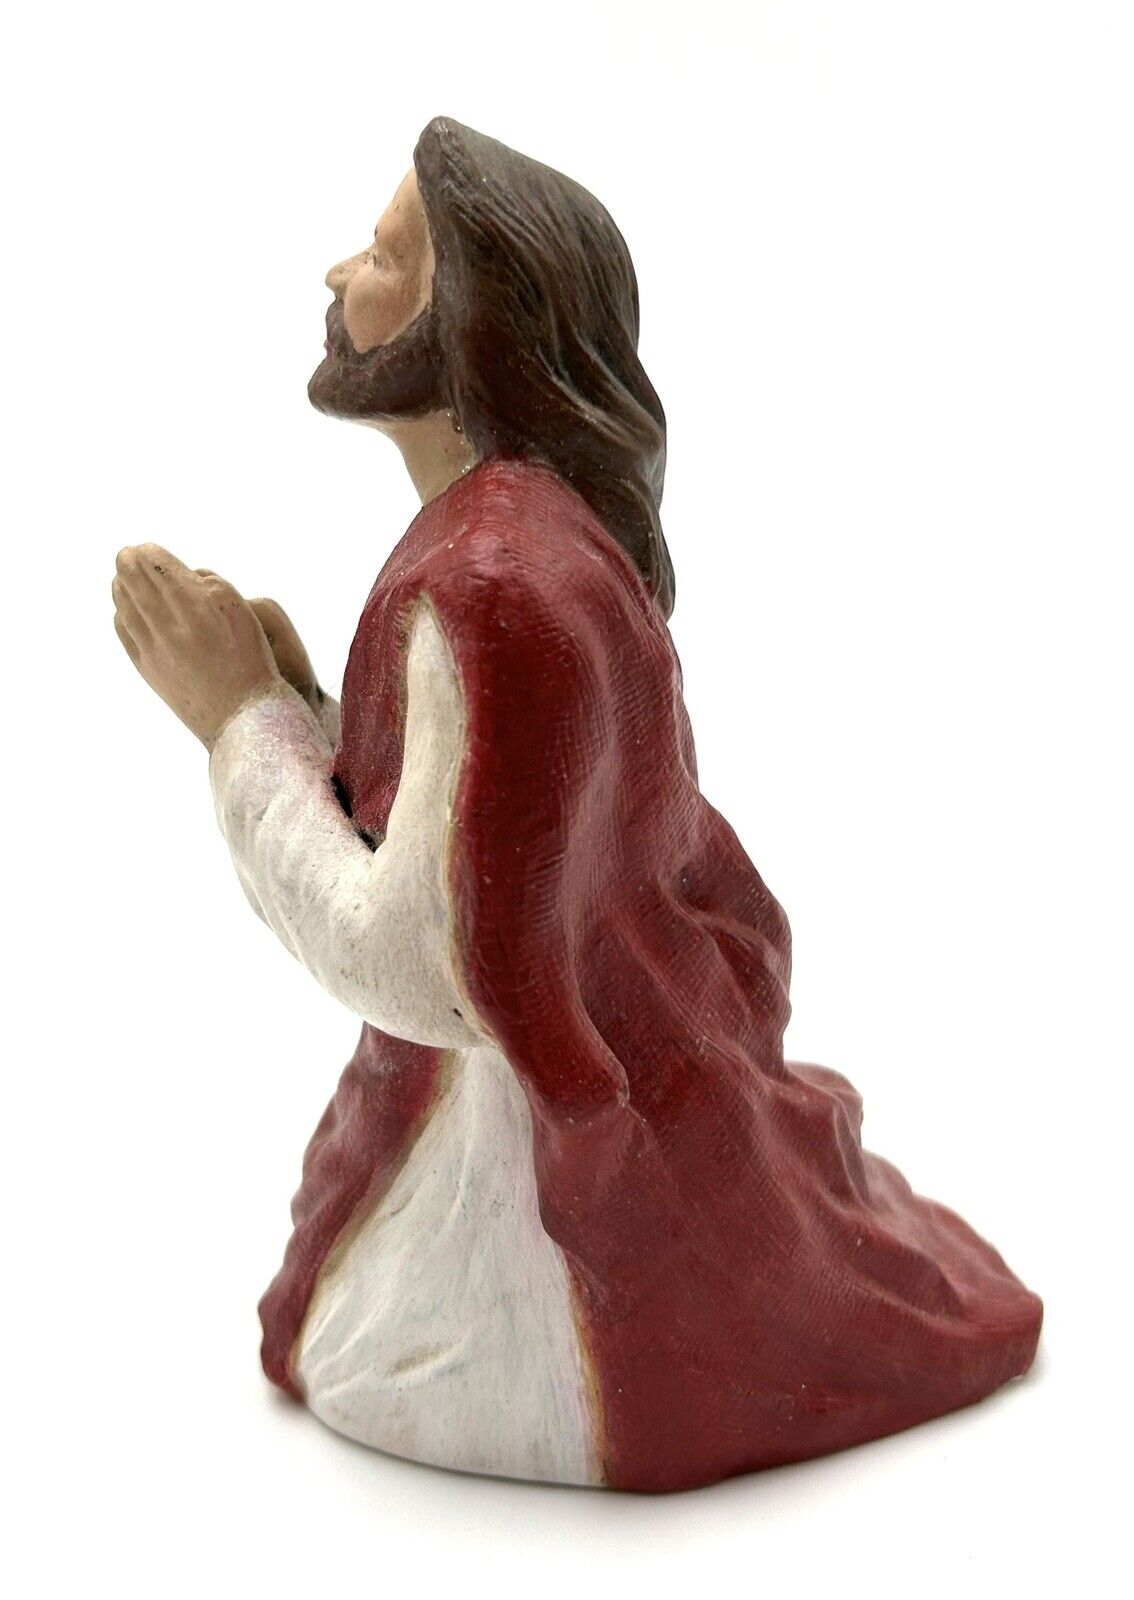 Praying Jesus Ceramic Statue Handpainted 5” Tall